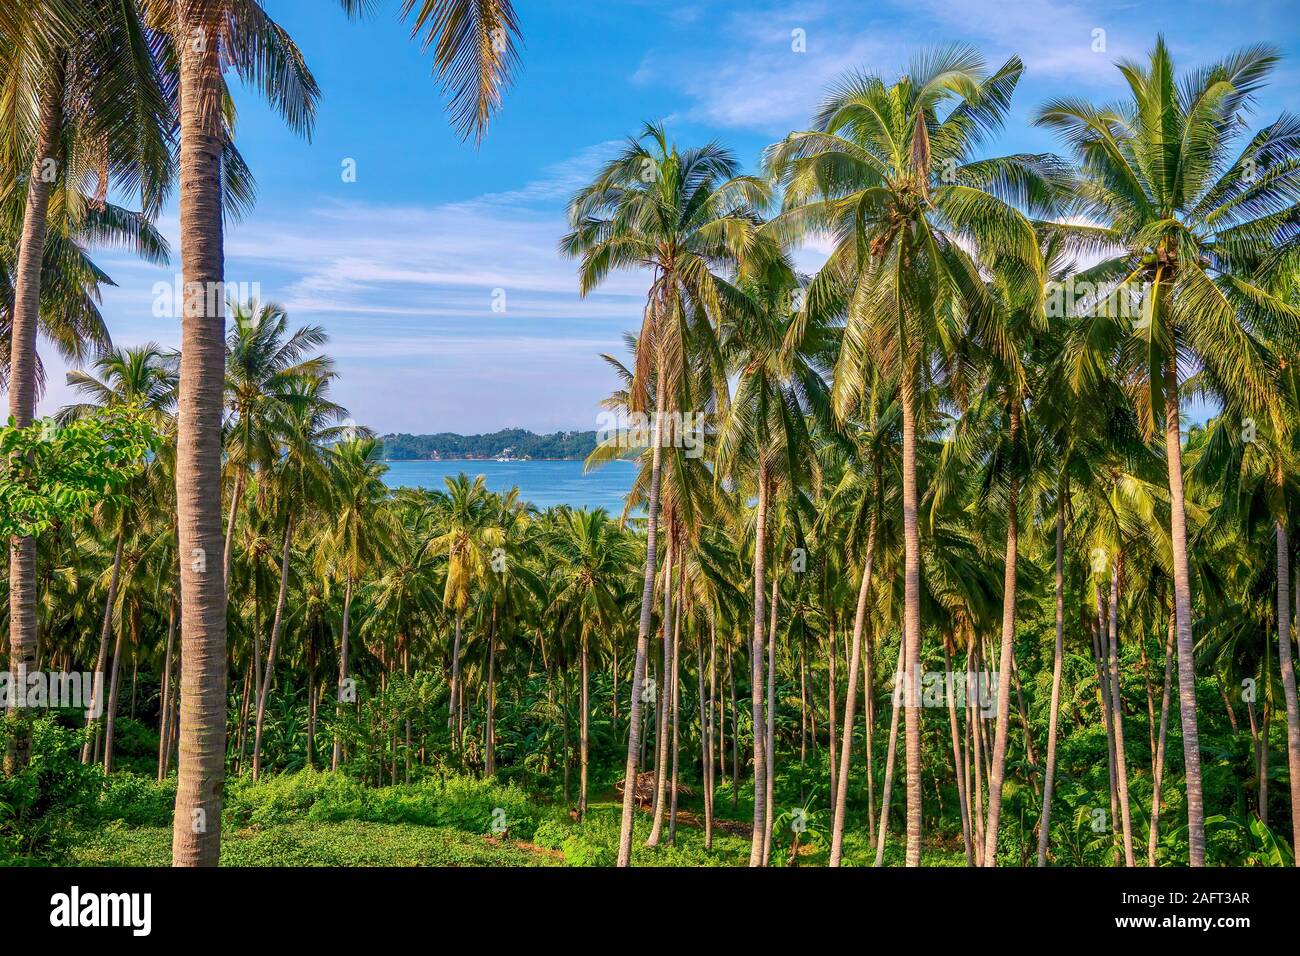 Eine Kokosnuß-Plantage mit Dutzenden von Palmen, auf einer wunderschönen tropischen Insel auf den Philippinen, wo copra Produktion ist ein wichtiger Wirtschaftszweig. Stockfoto